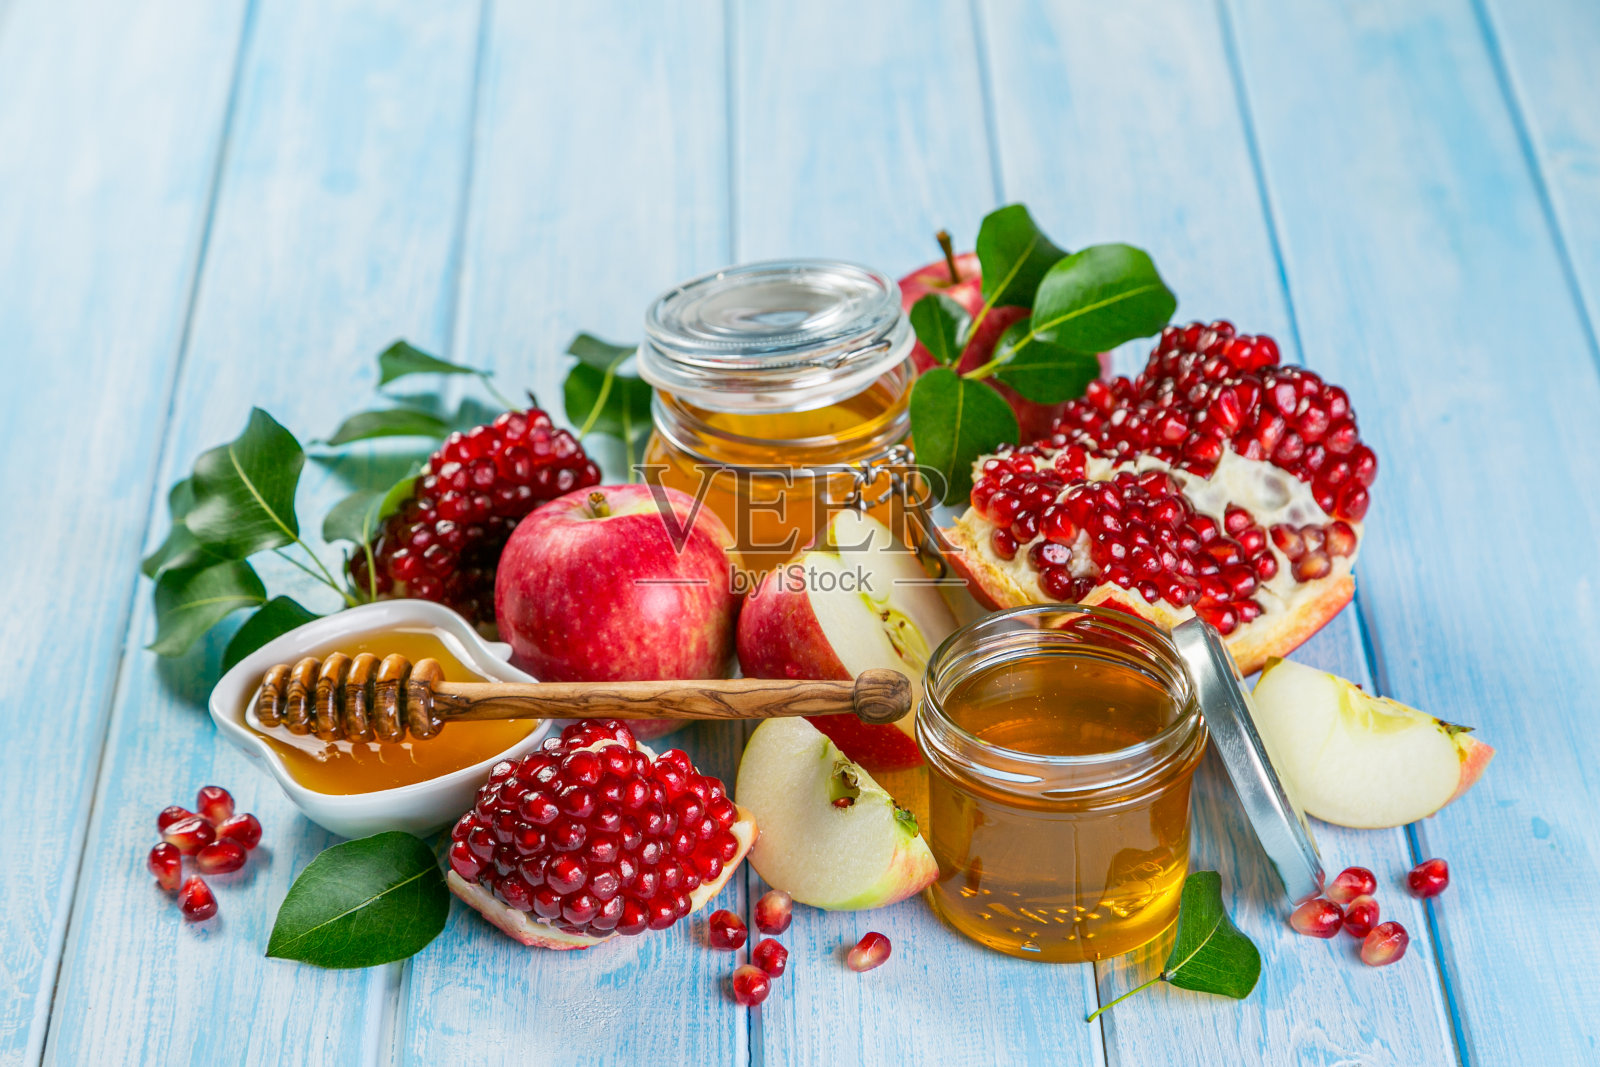 犹太新年的概念——蜂蜜、苹果、石榴等象征照片摄影图片